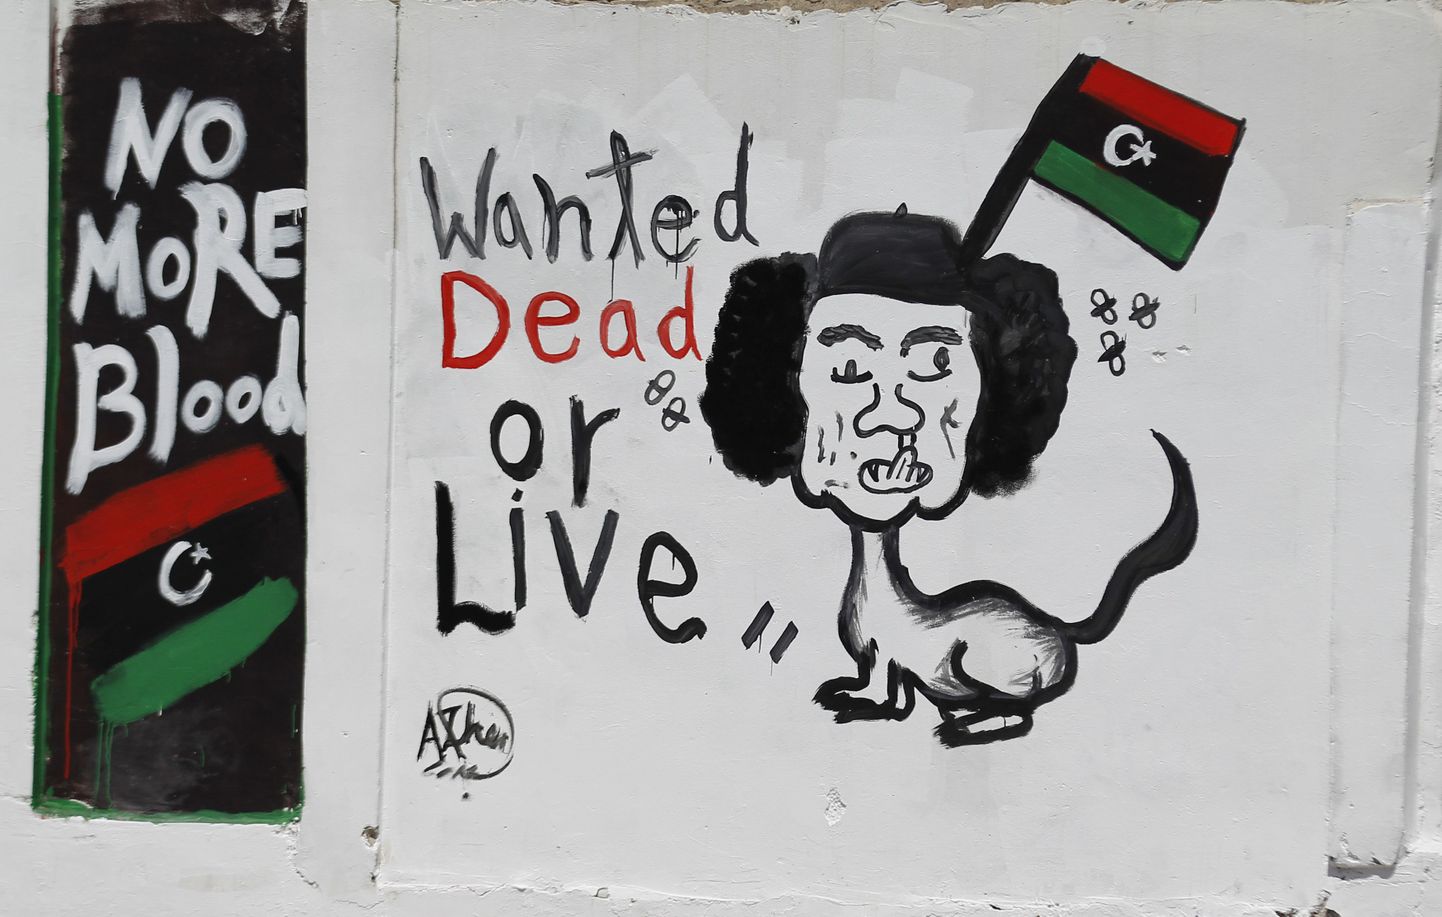 Tagaotsitav Muammar Gaddafi karikatuuril Tripolis.